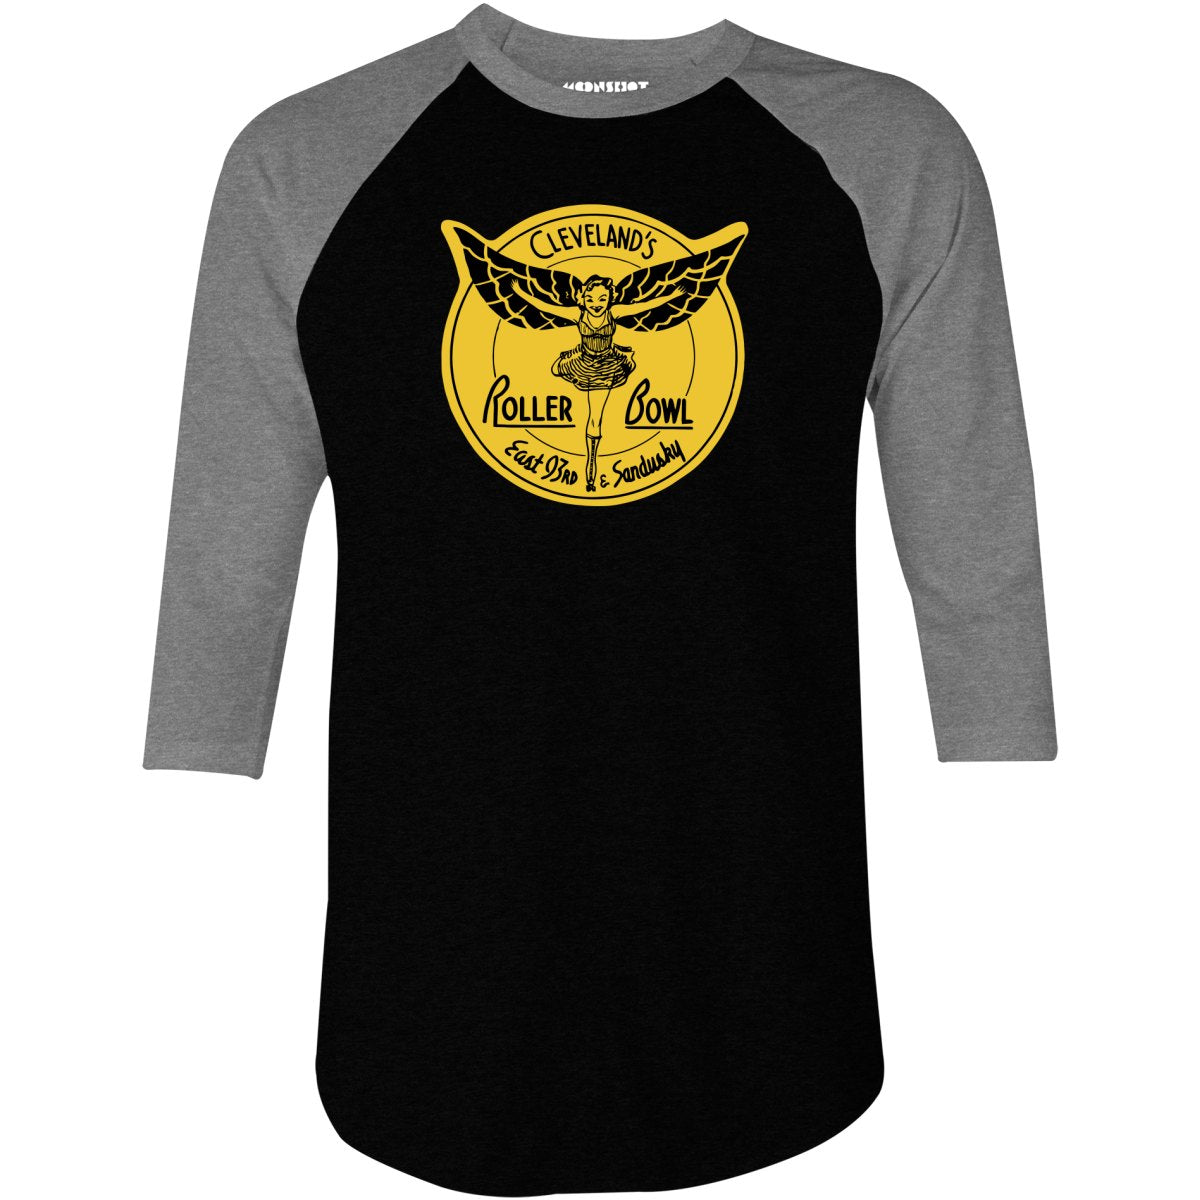 Roller Bowl - Cleveland, OH - Vintage Roller Rink - 3/4 Sleeve Raglan T-Shirt